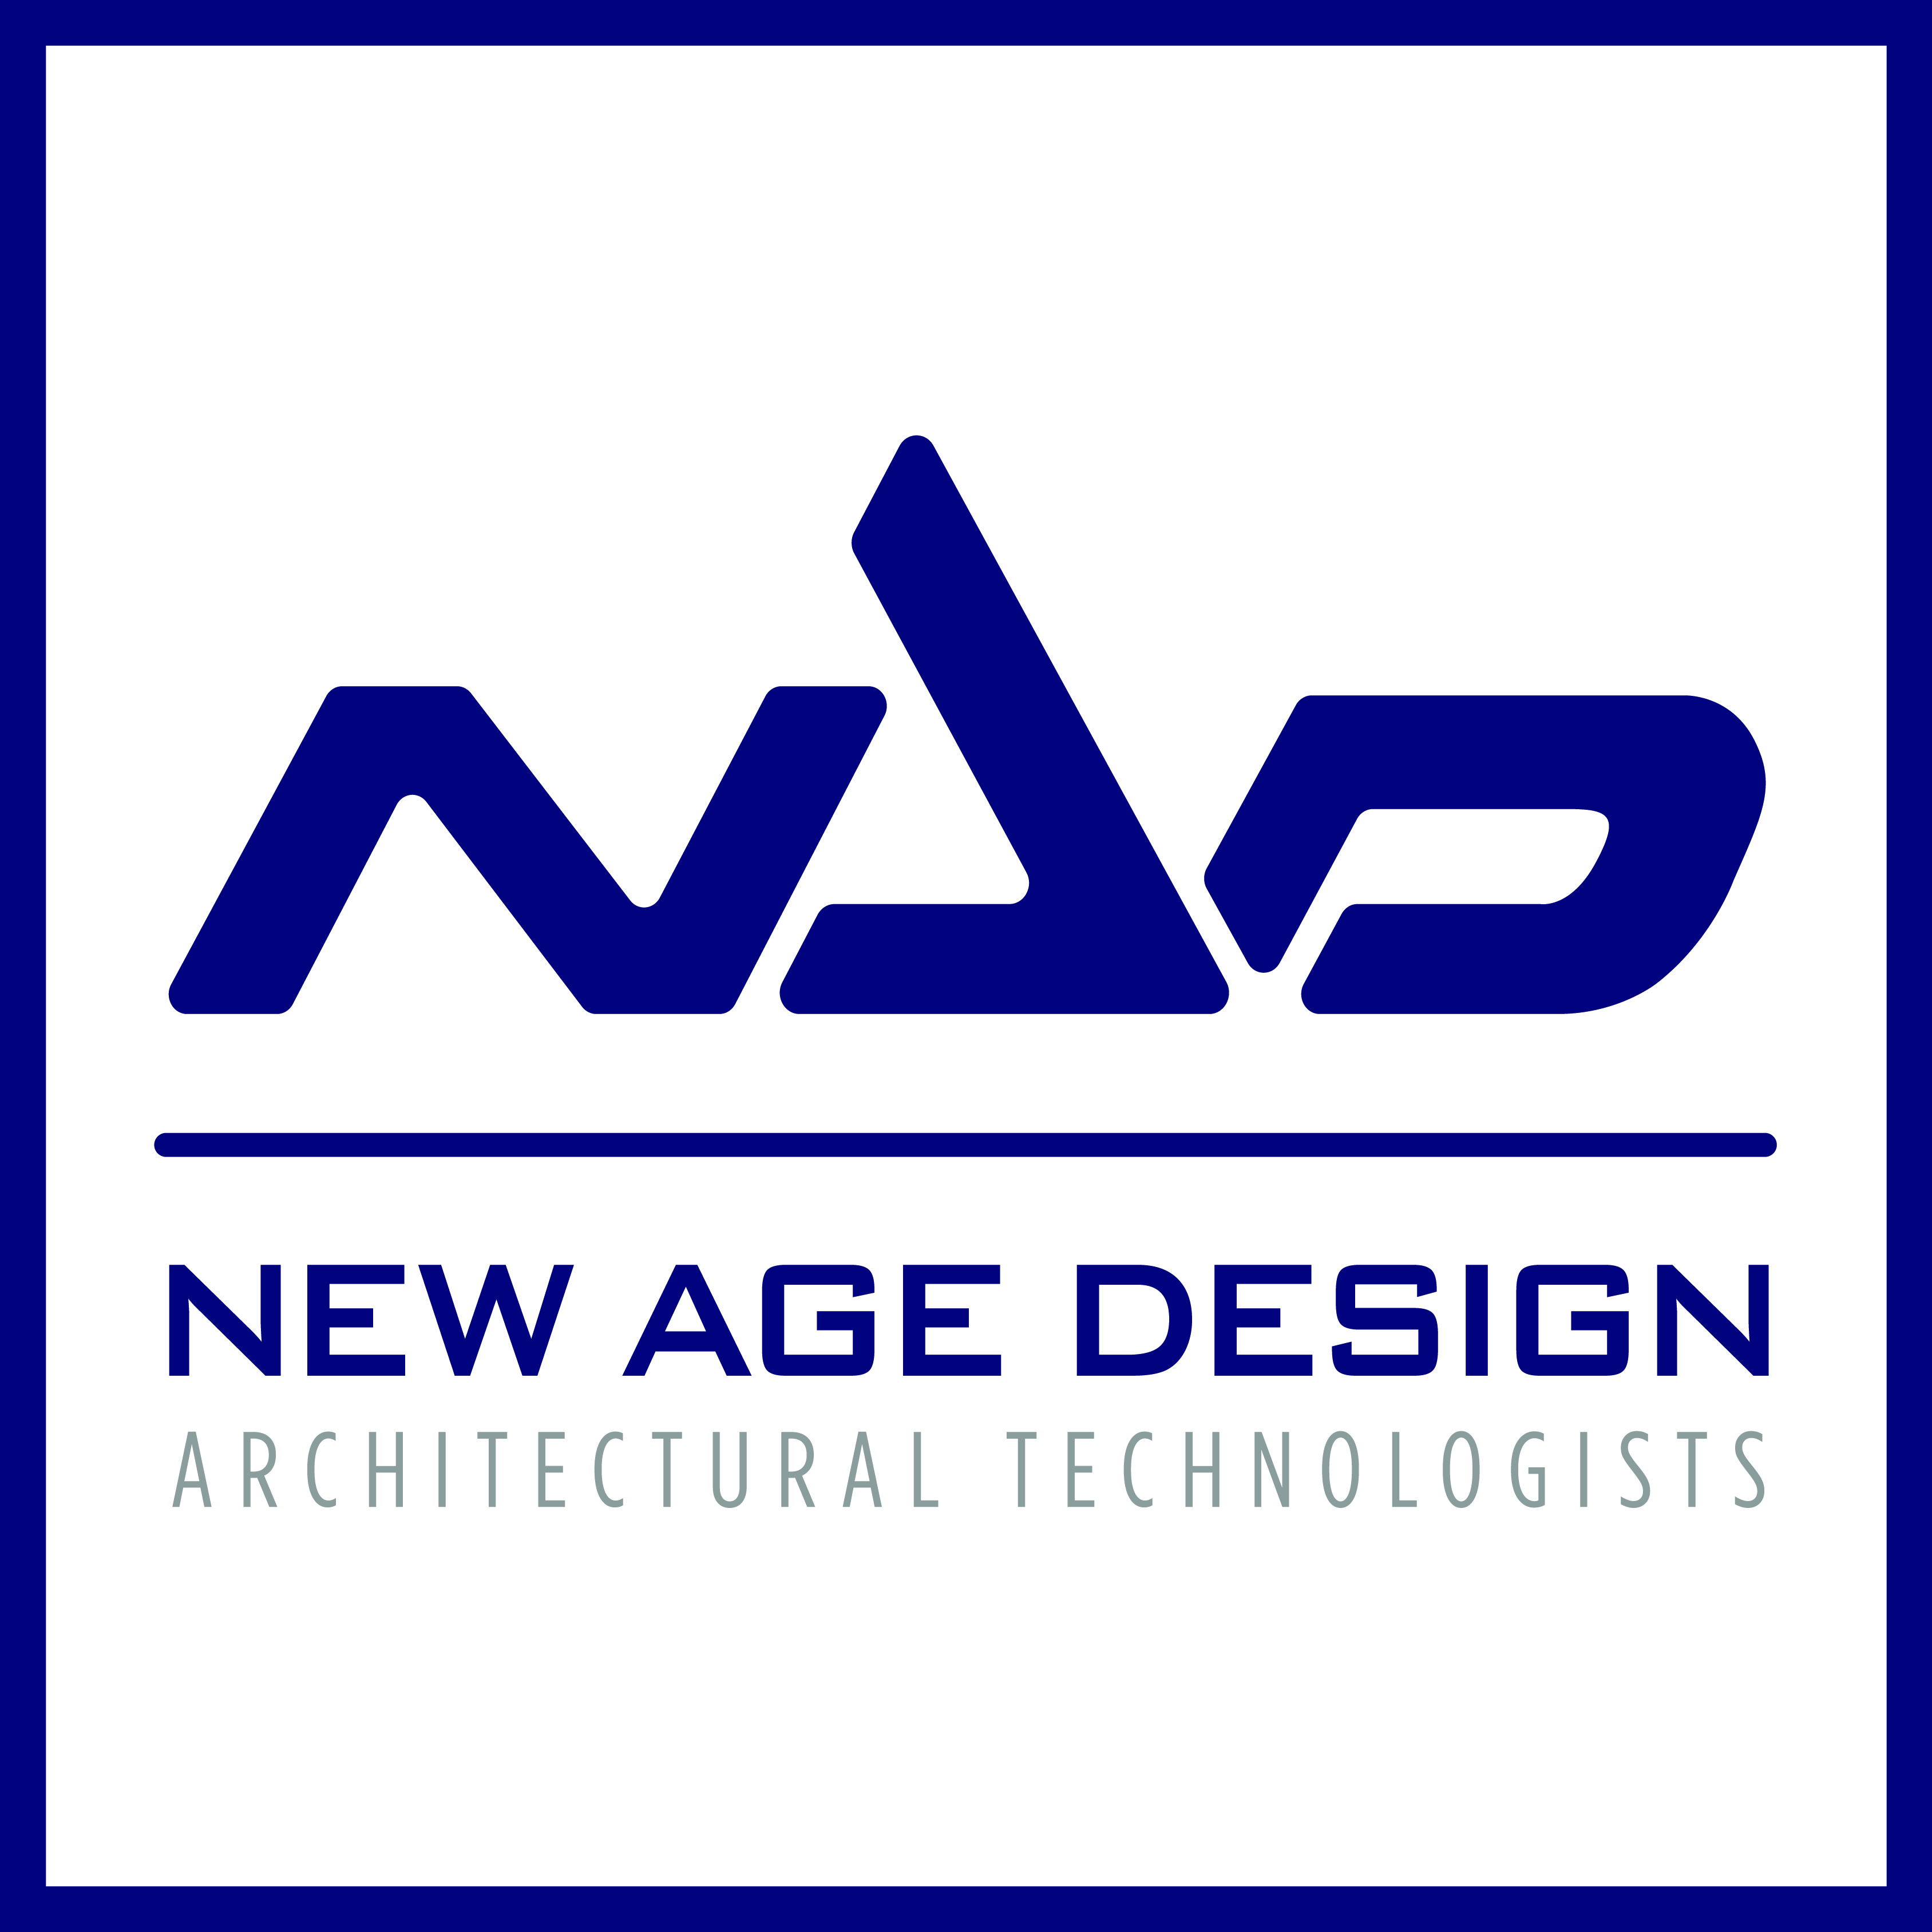 New Age Design